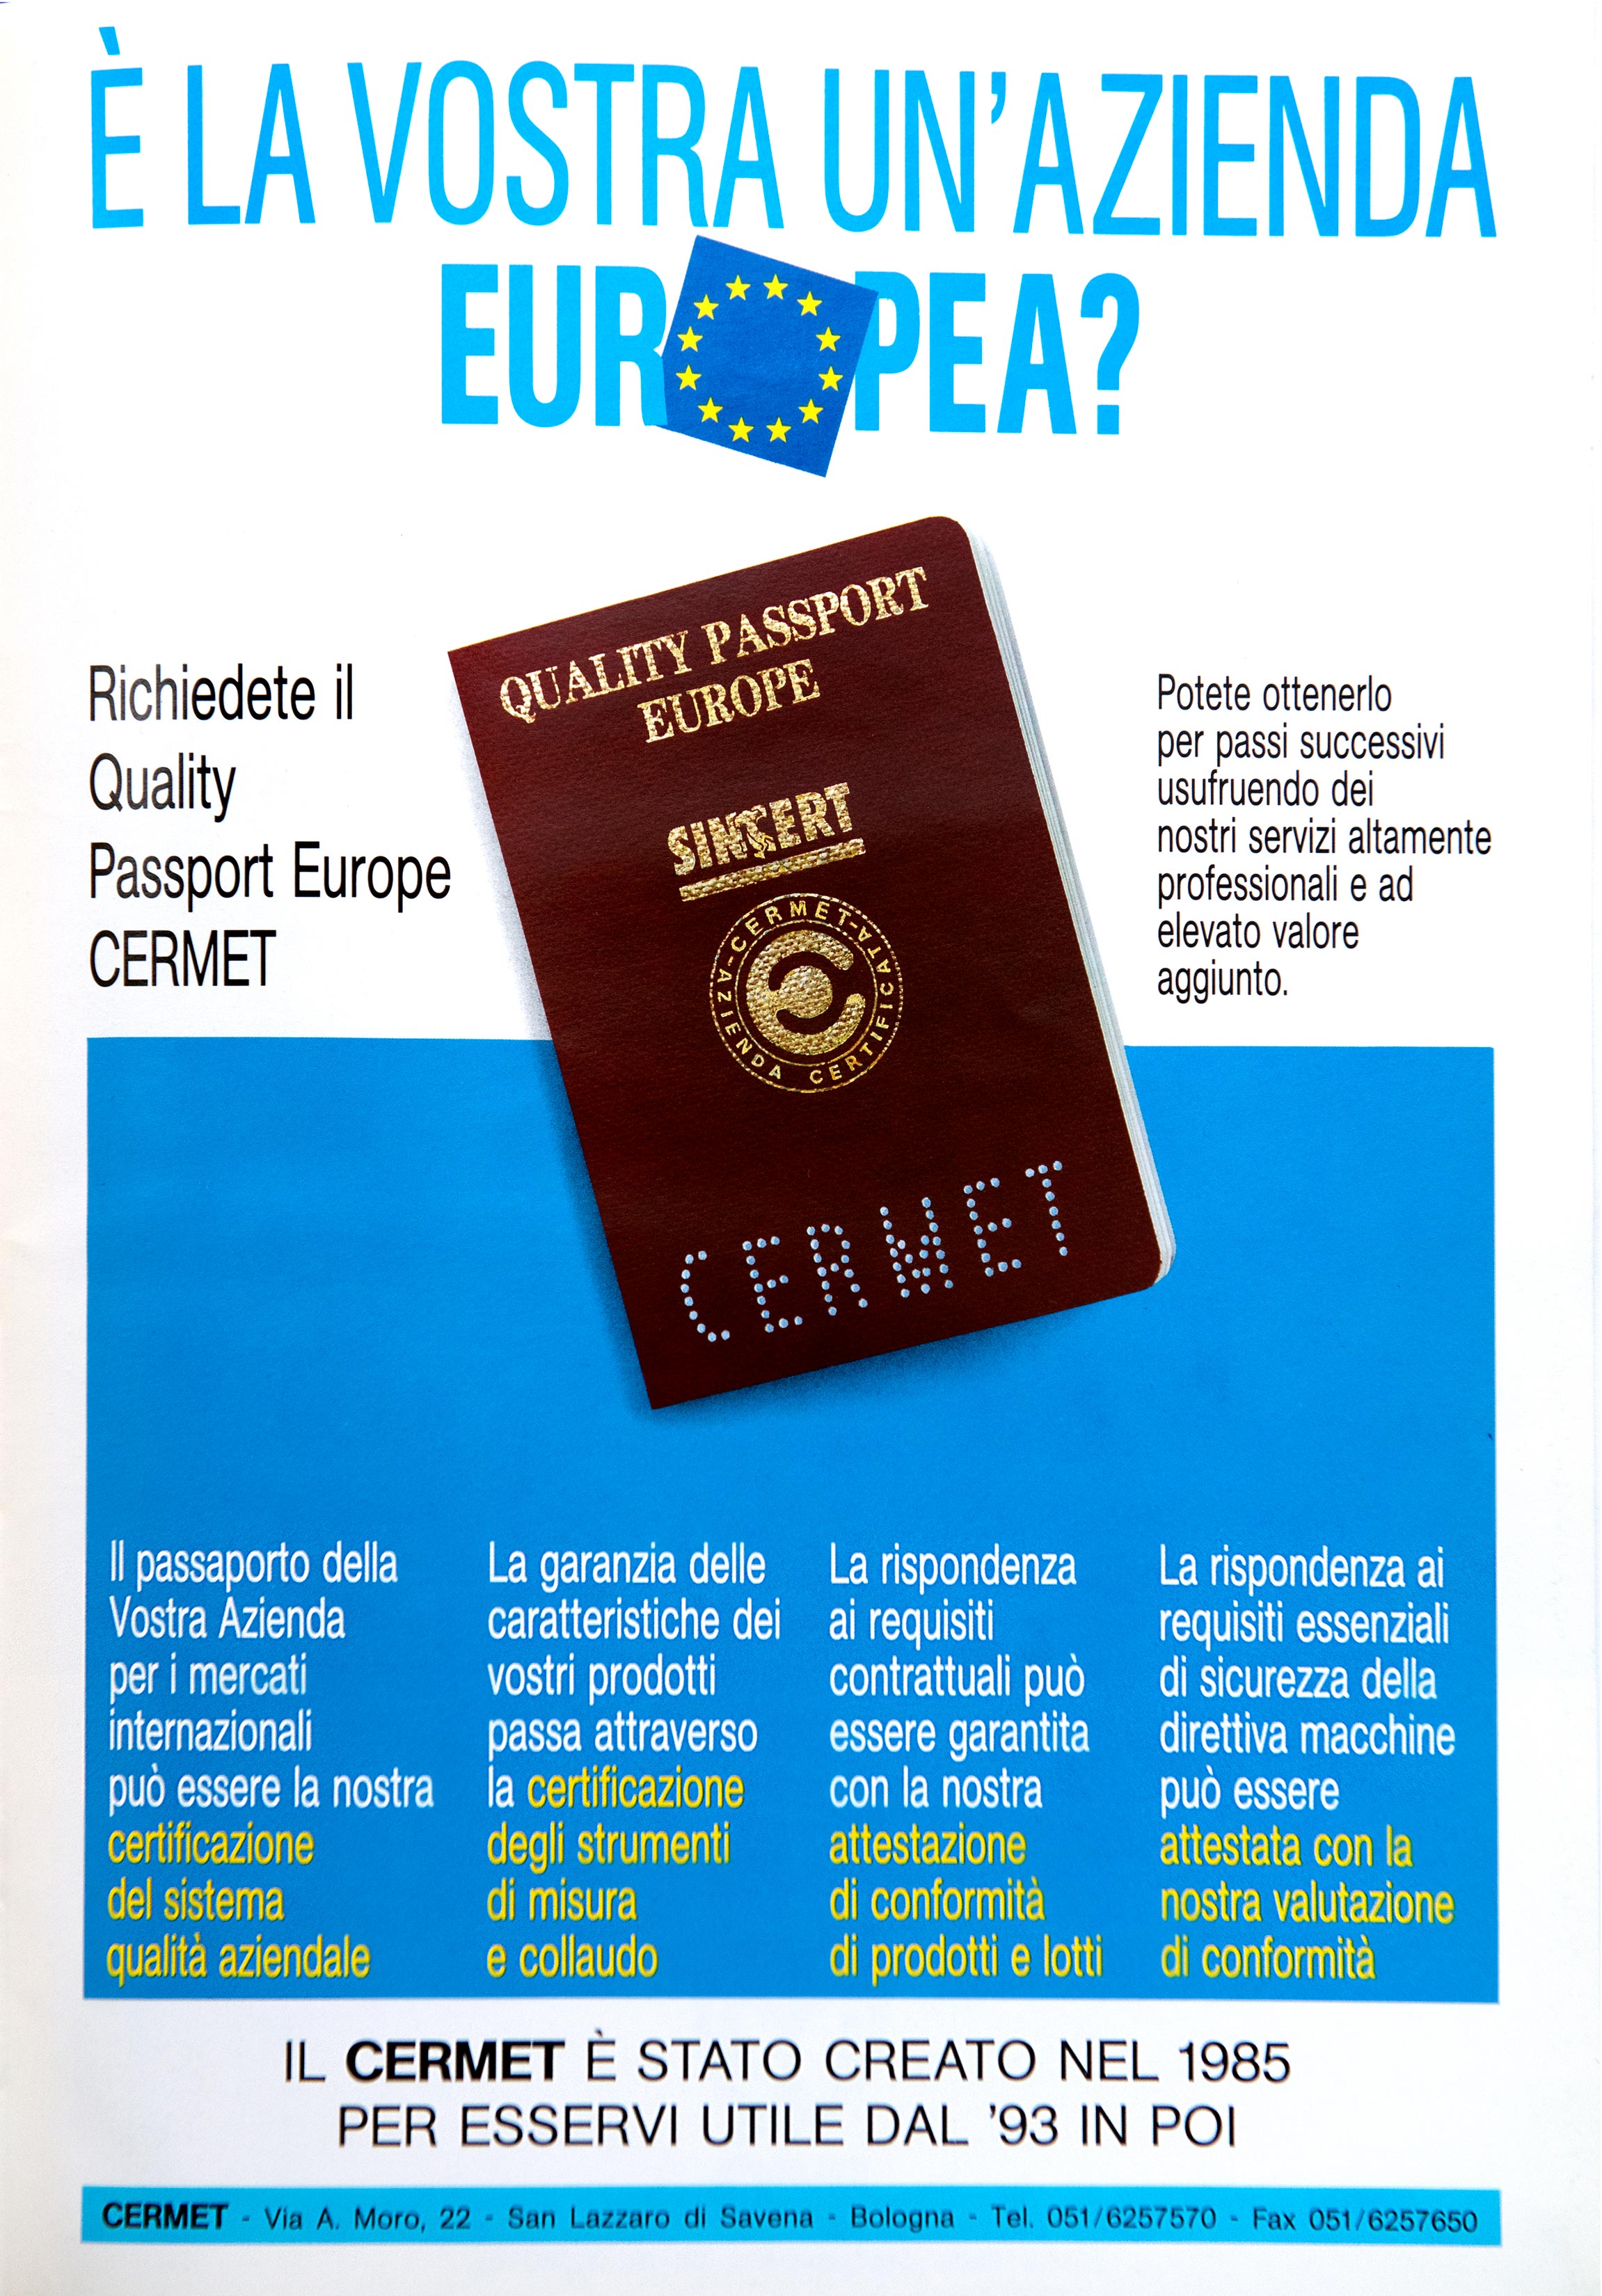 Quality Passport Europe CERMET, il passaporto per la Vostra Azienda - 1993.